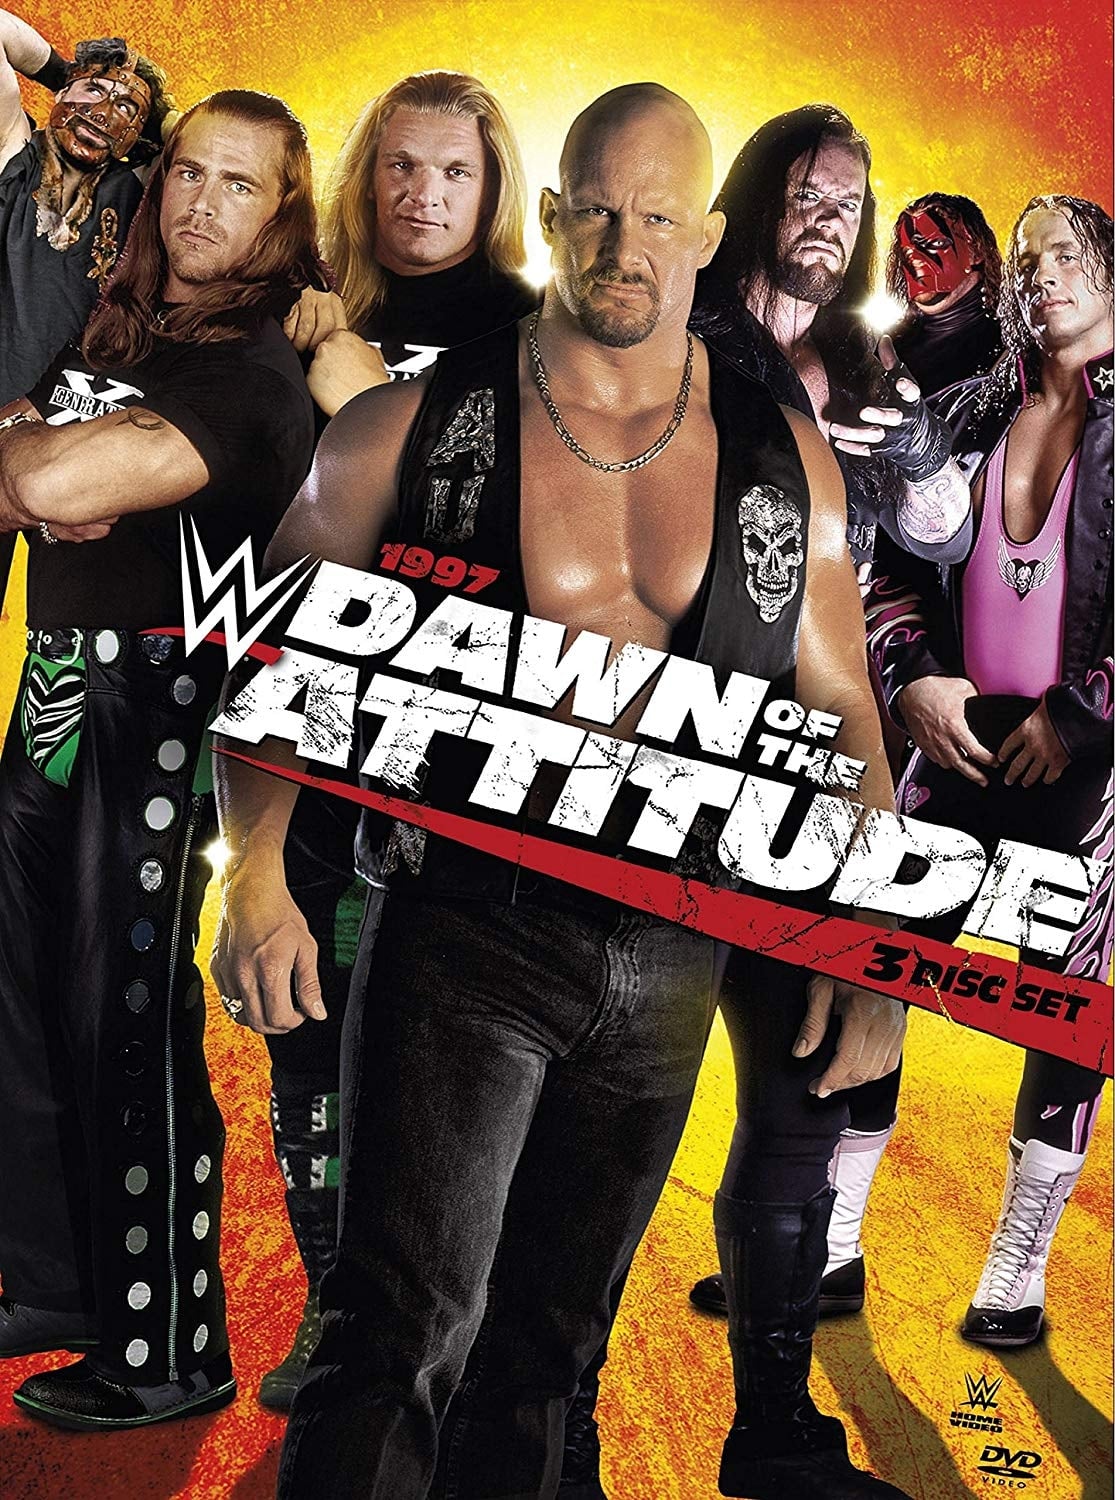 1997: Dawn of the Attitude